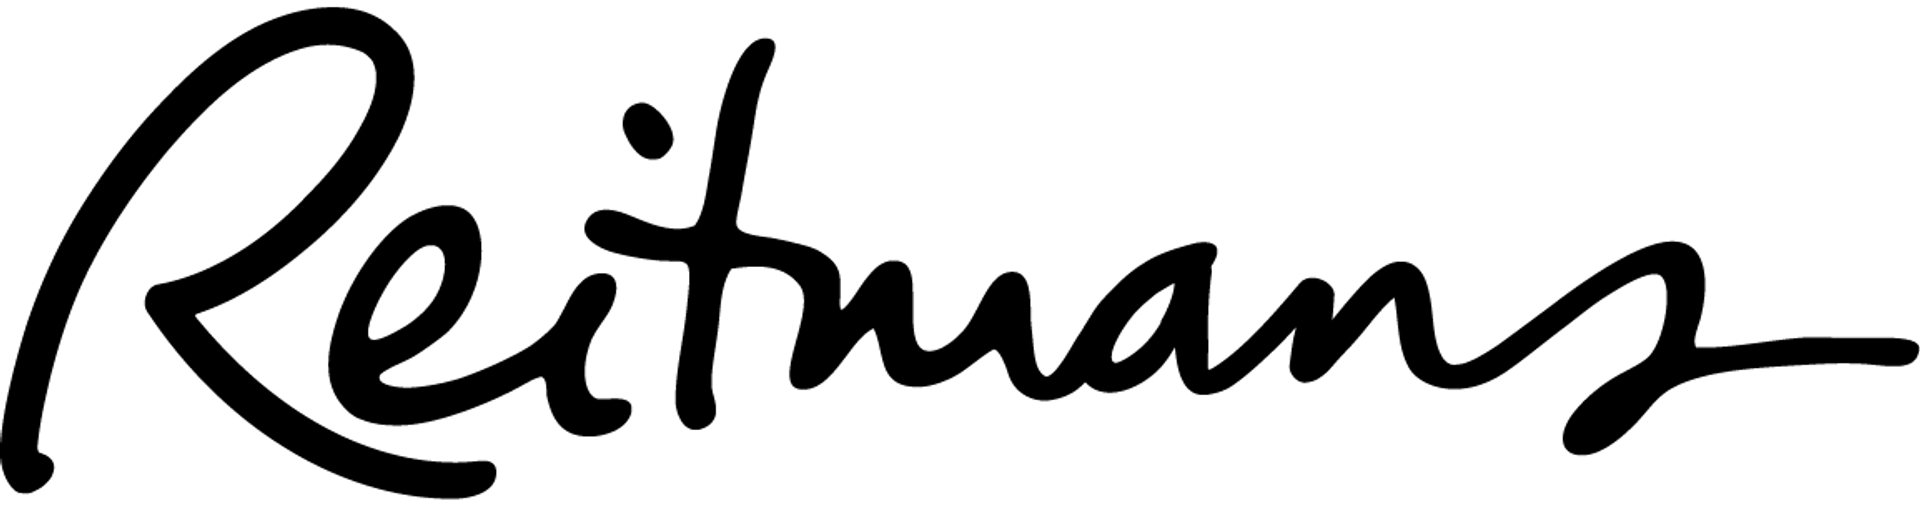 REITMANS logo de circulaire